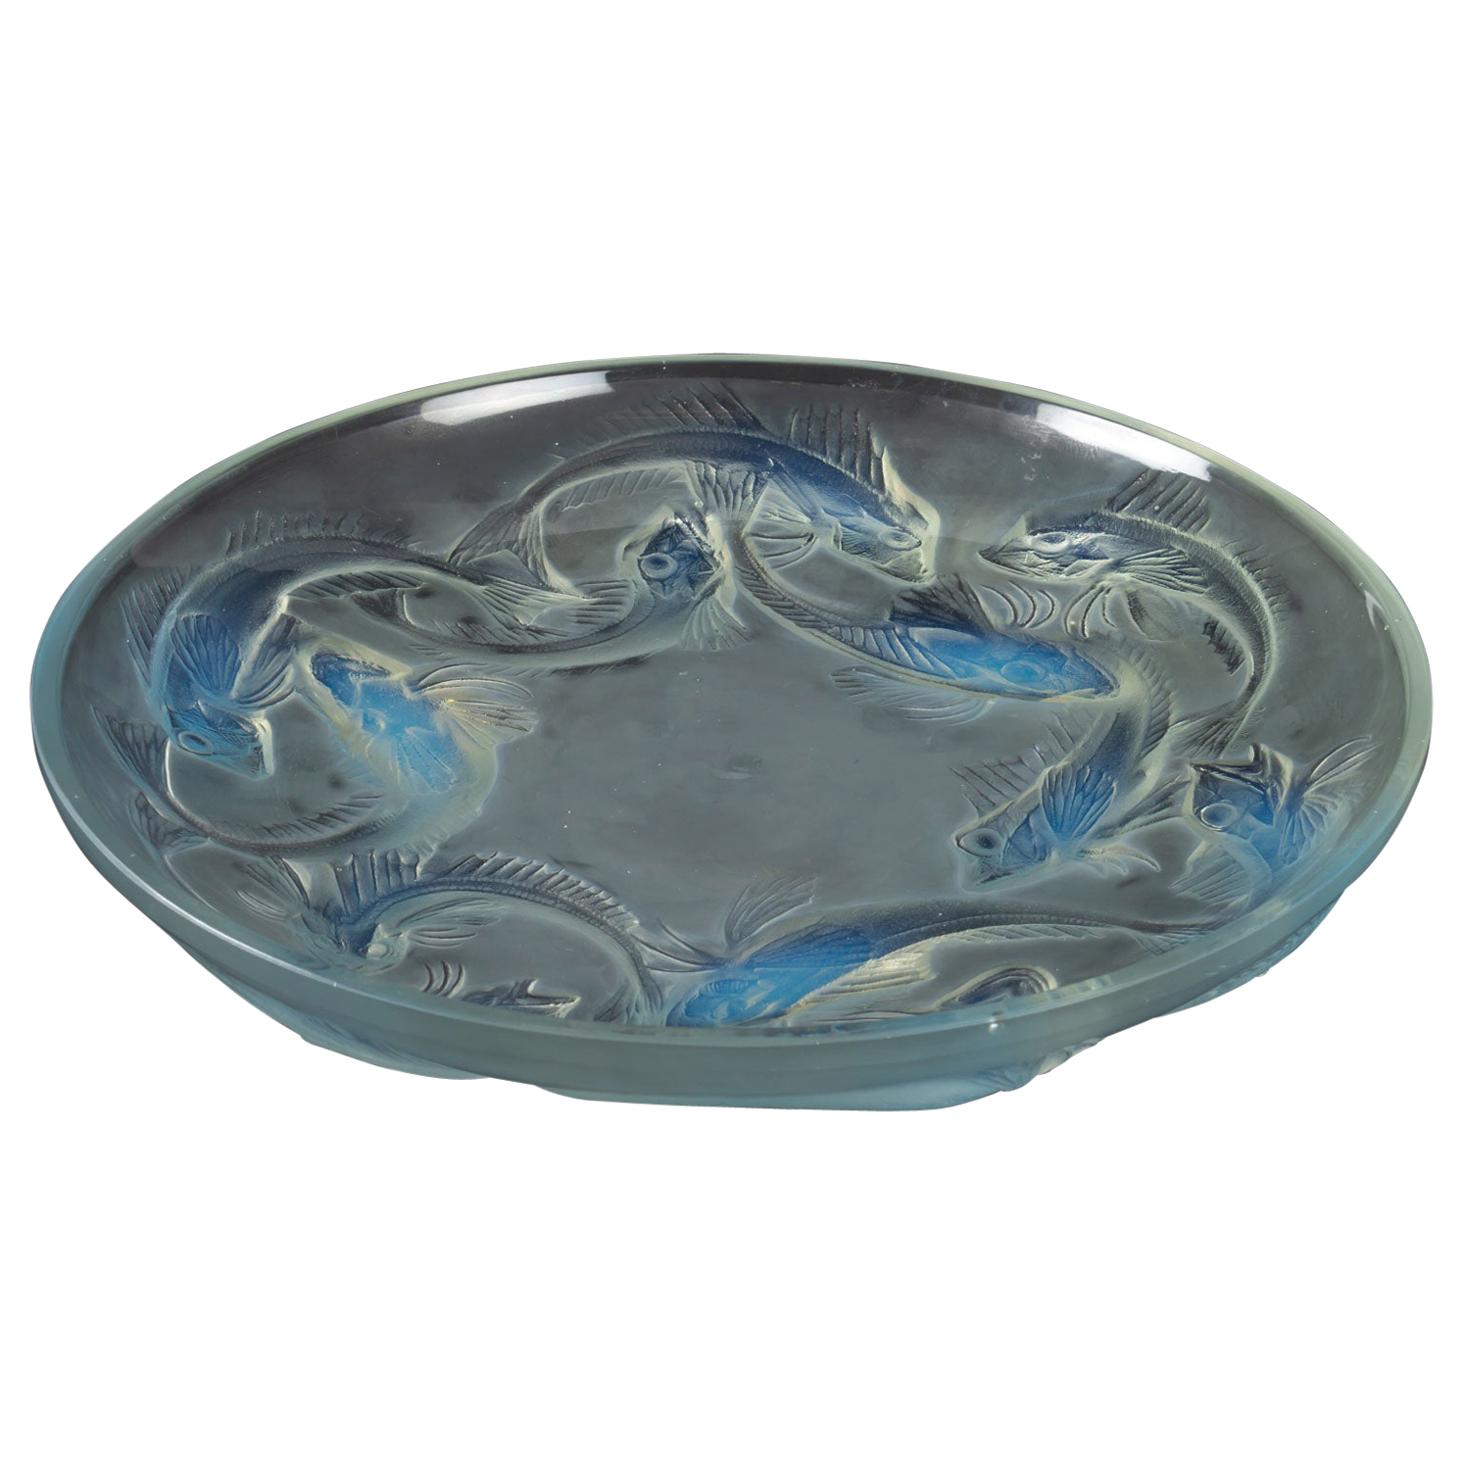 1920 René Lalique Martigues Coupe Bowl Opalescent Glass, Fishes